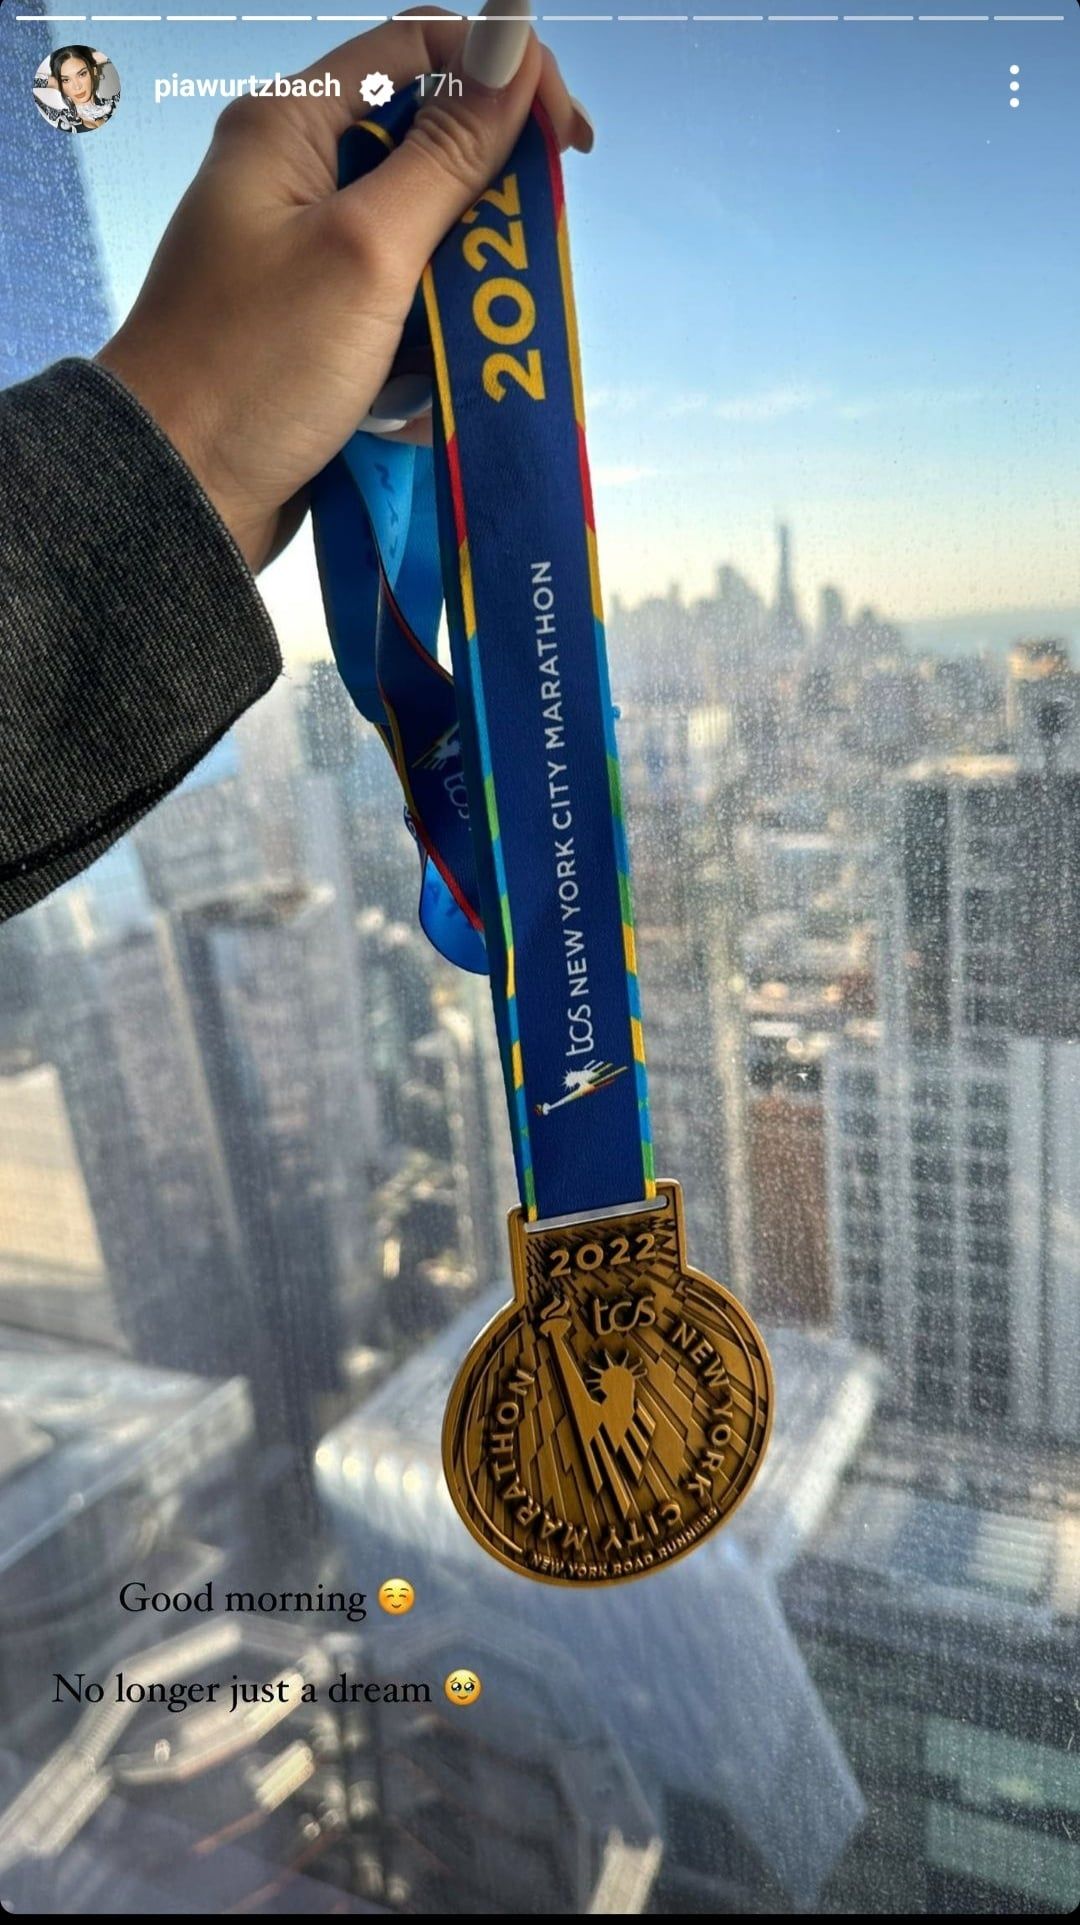 Pia Wurtzbach NYC Marathon